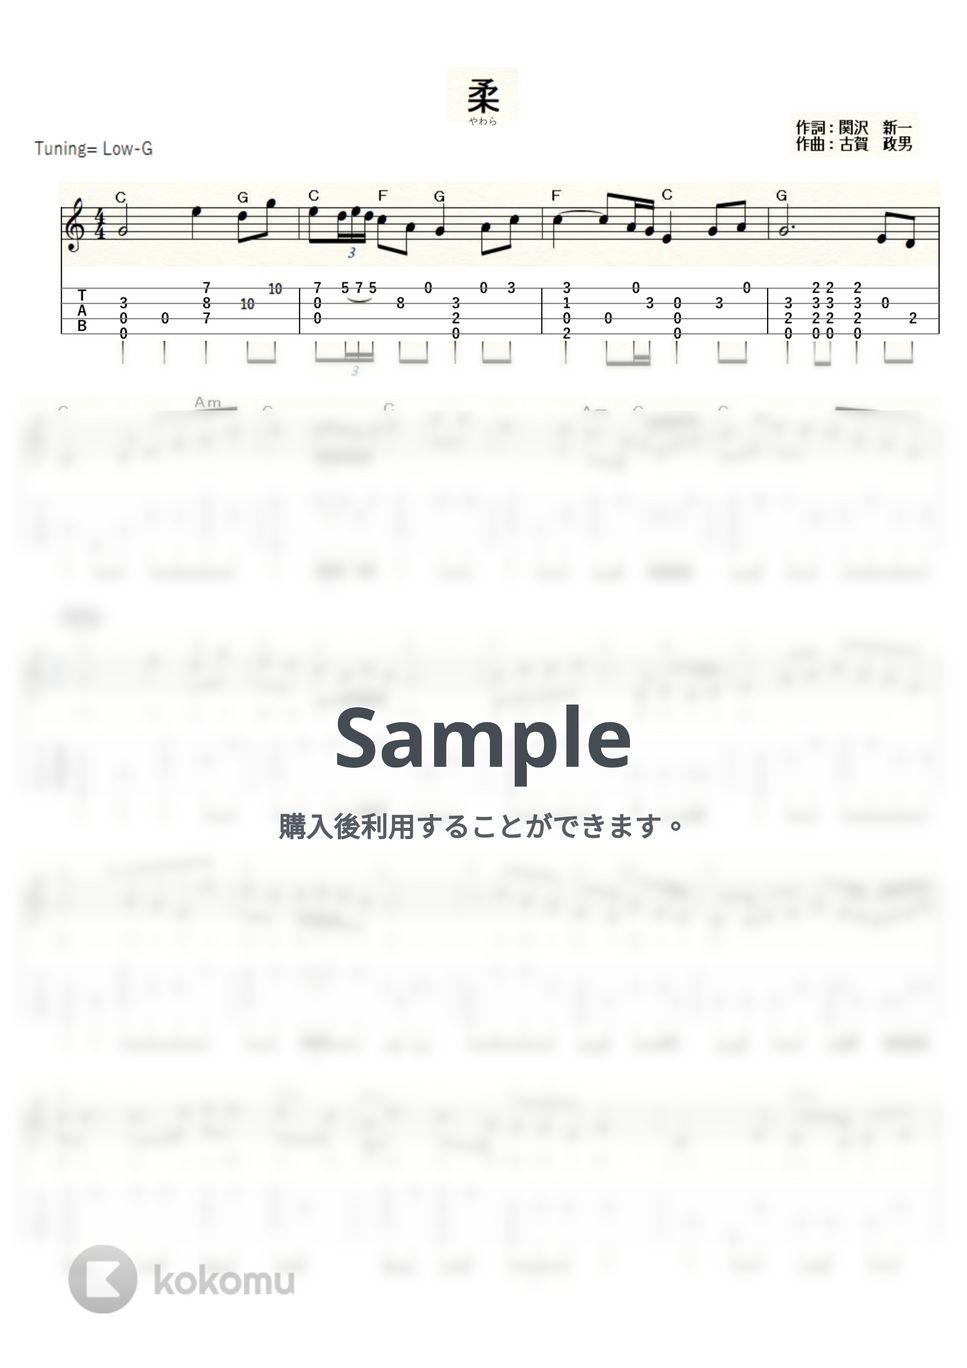 美空 ひばり - 柔〈やわら〉 (ｳｸﾚﾚｿﾛ/Low-G/中級) by ukulelepapa